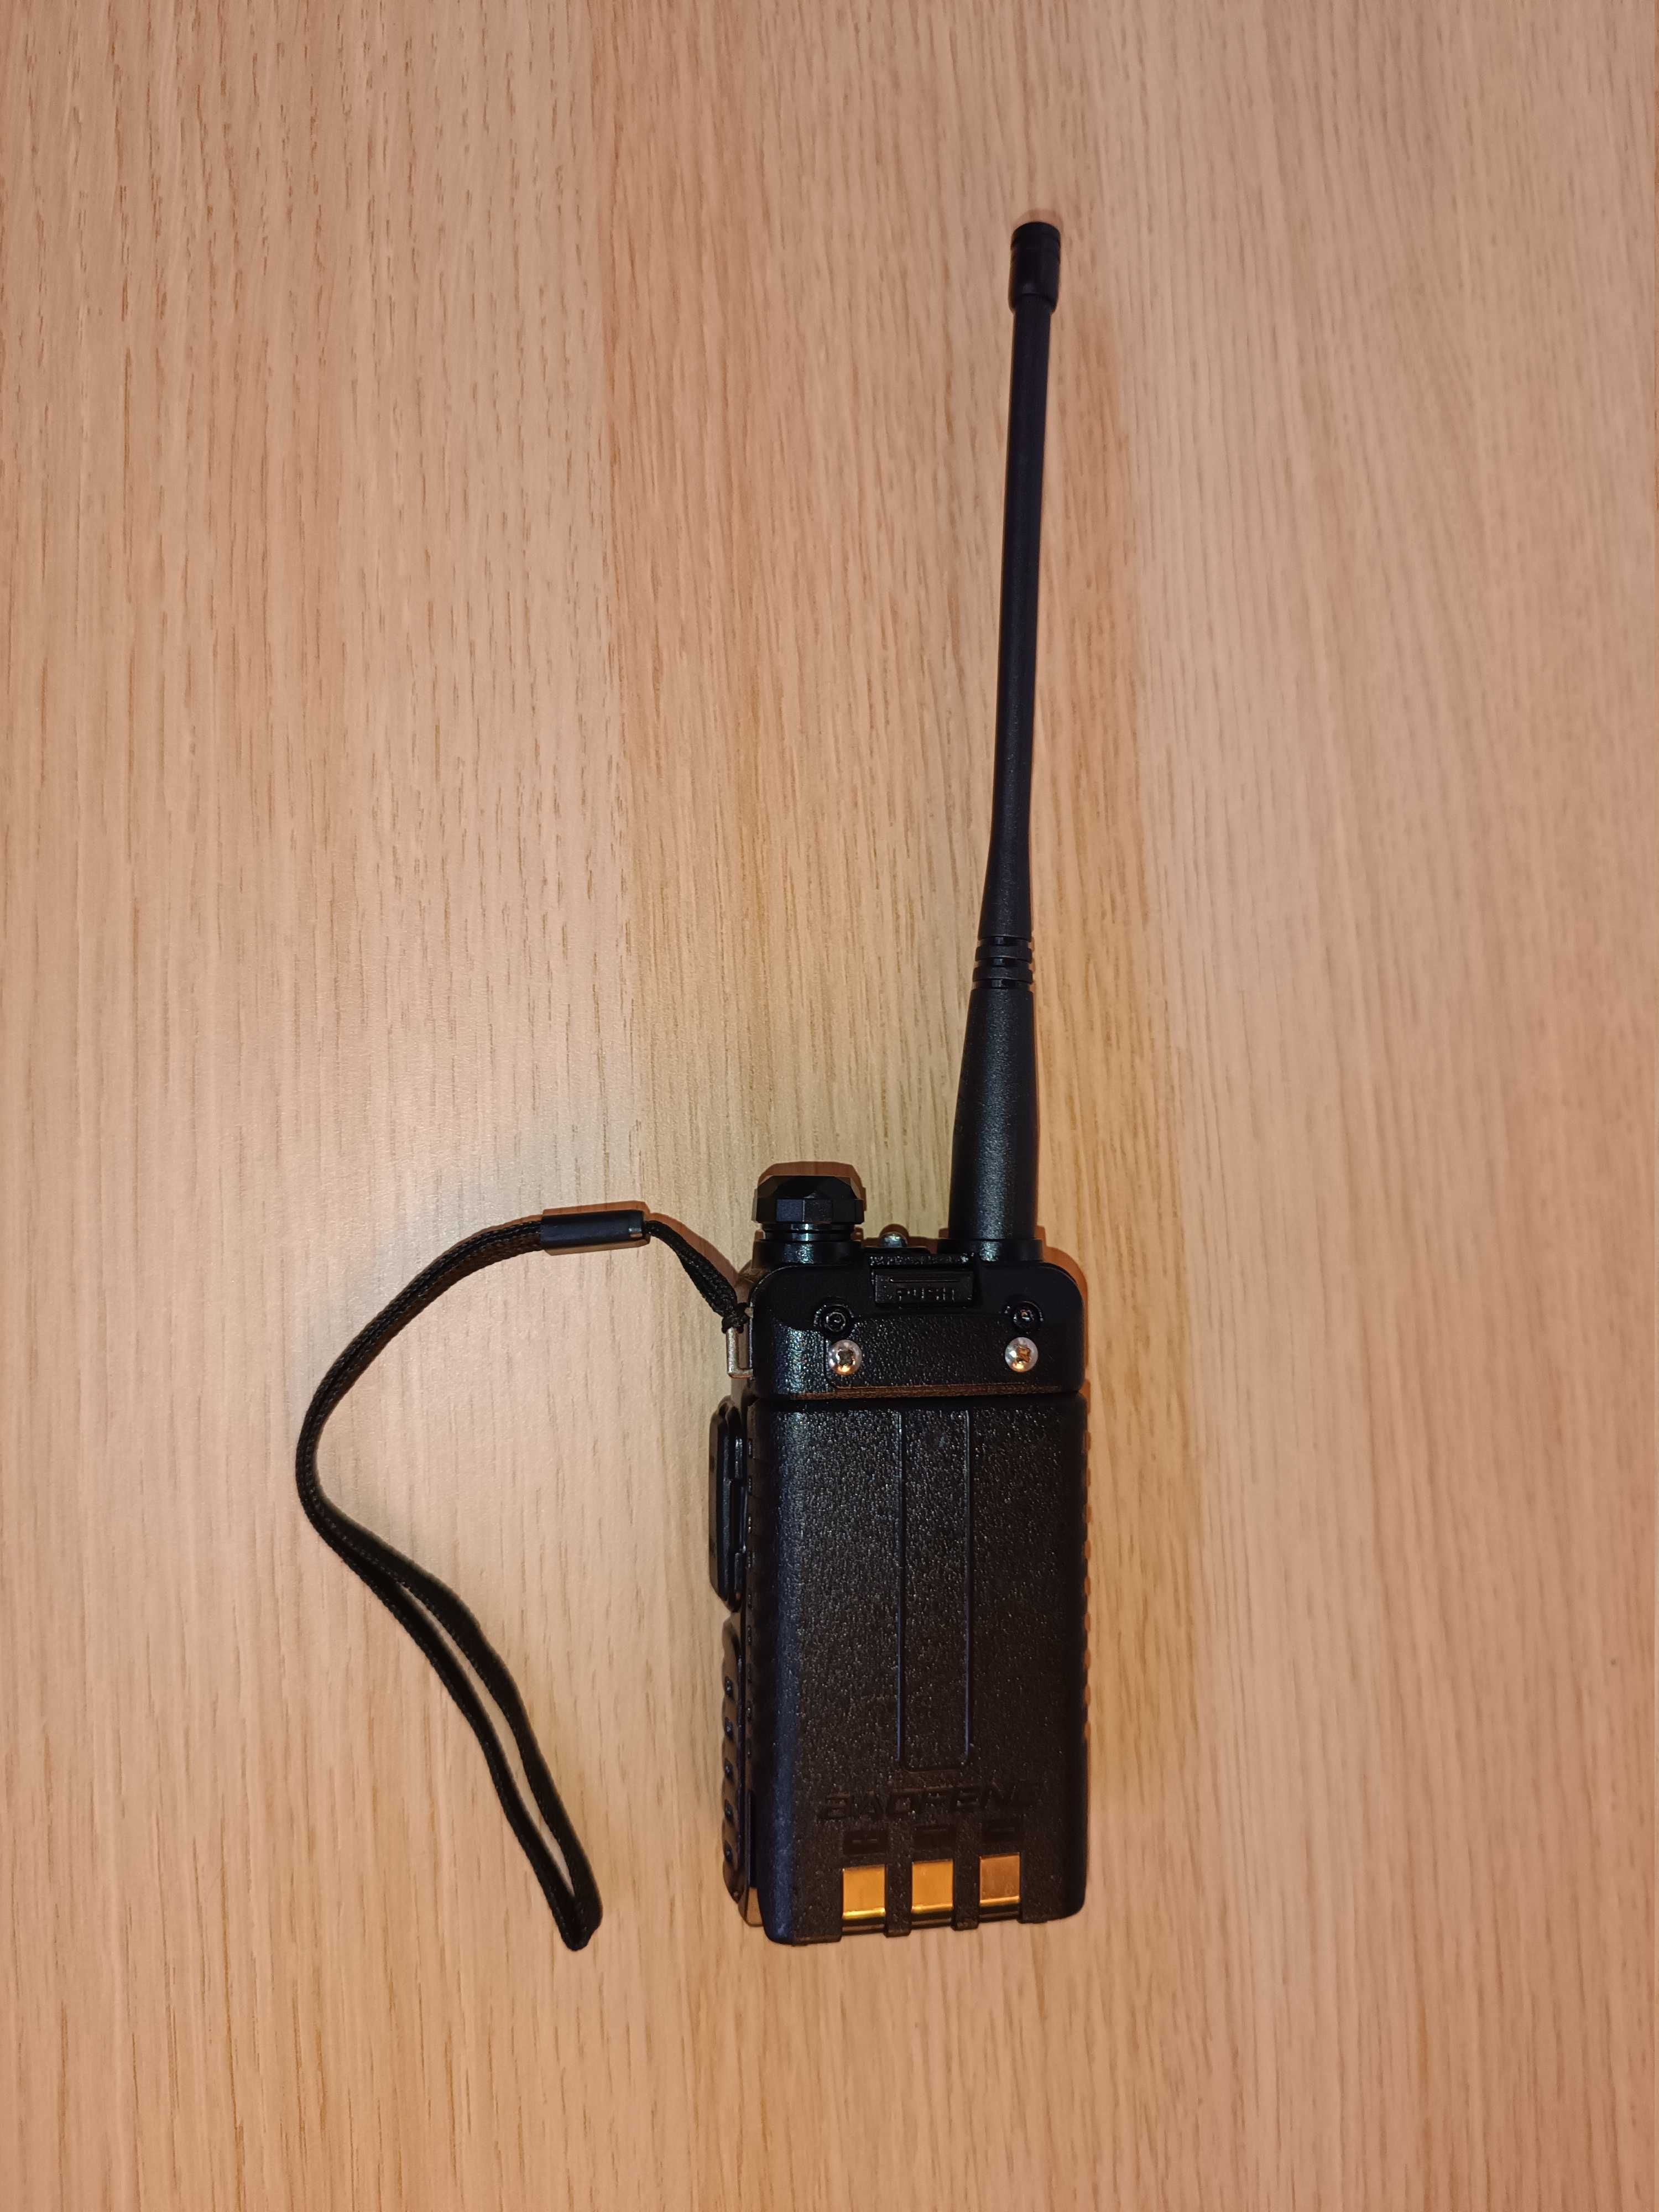 Профессиональная рация Baofeng UV-5R Black + кабель прошивки